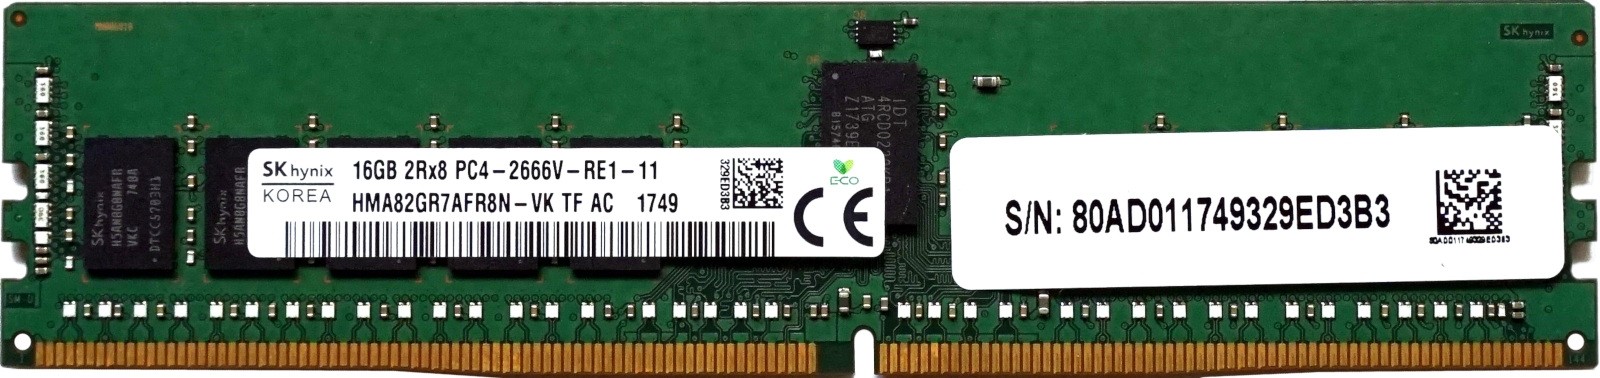 Hynix - 16GB PC4-21300V-R (DDR4-2600Mhz, 2RX8)